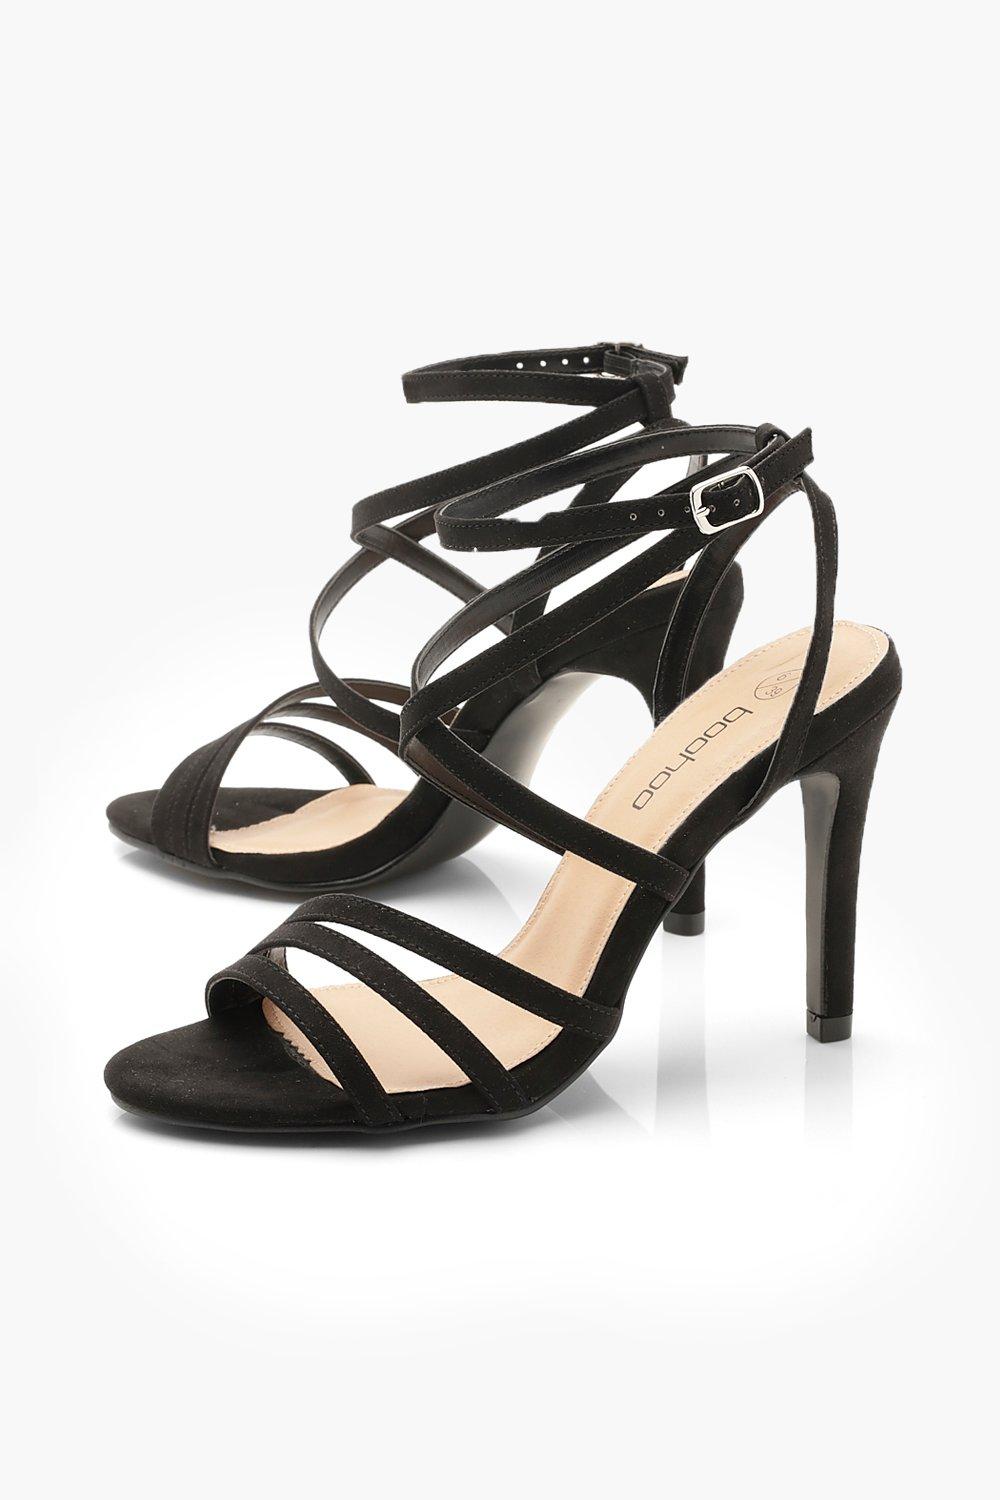 wide width strappy heels